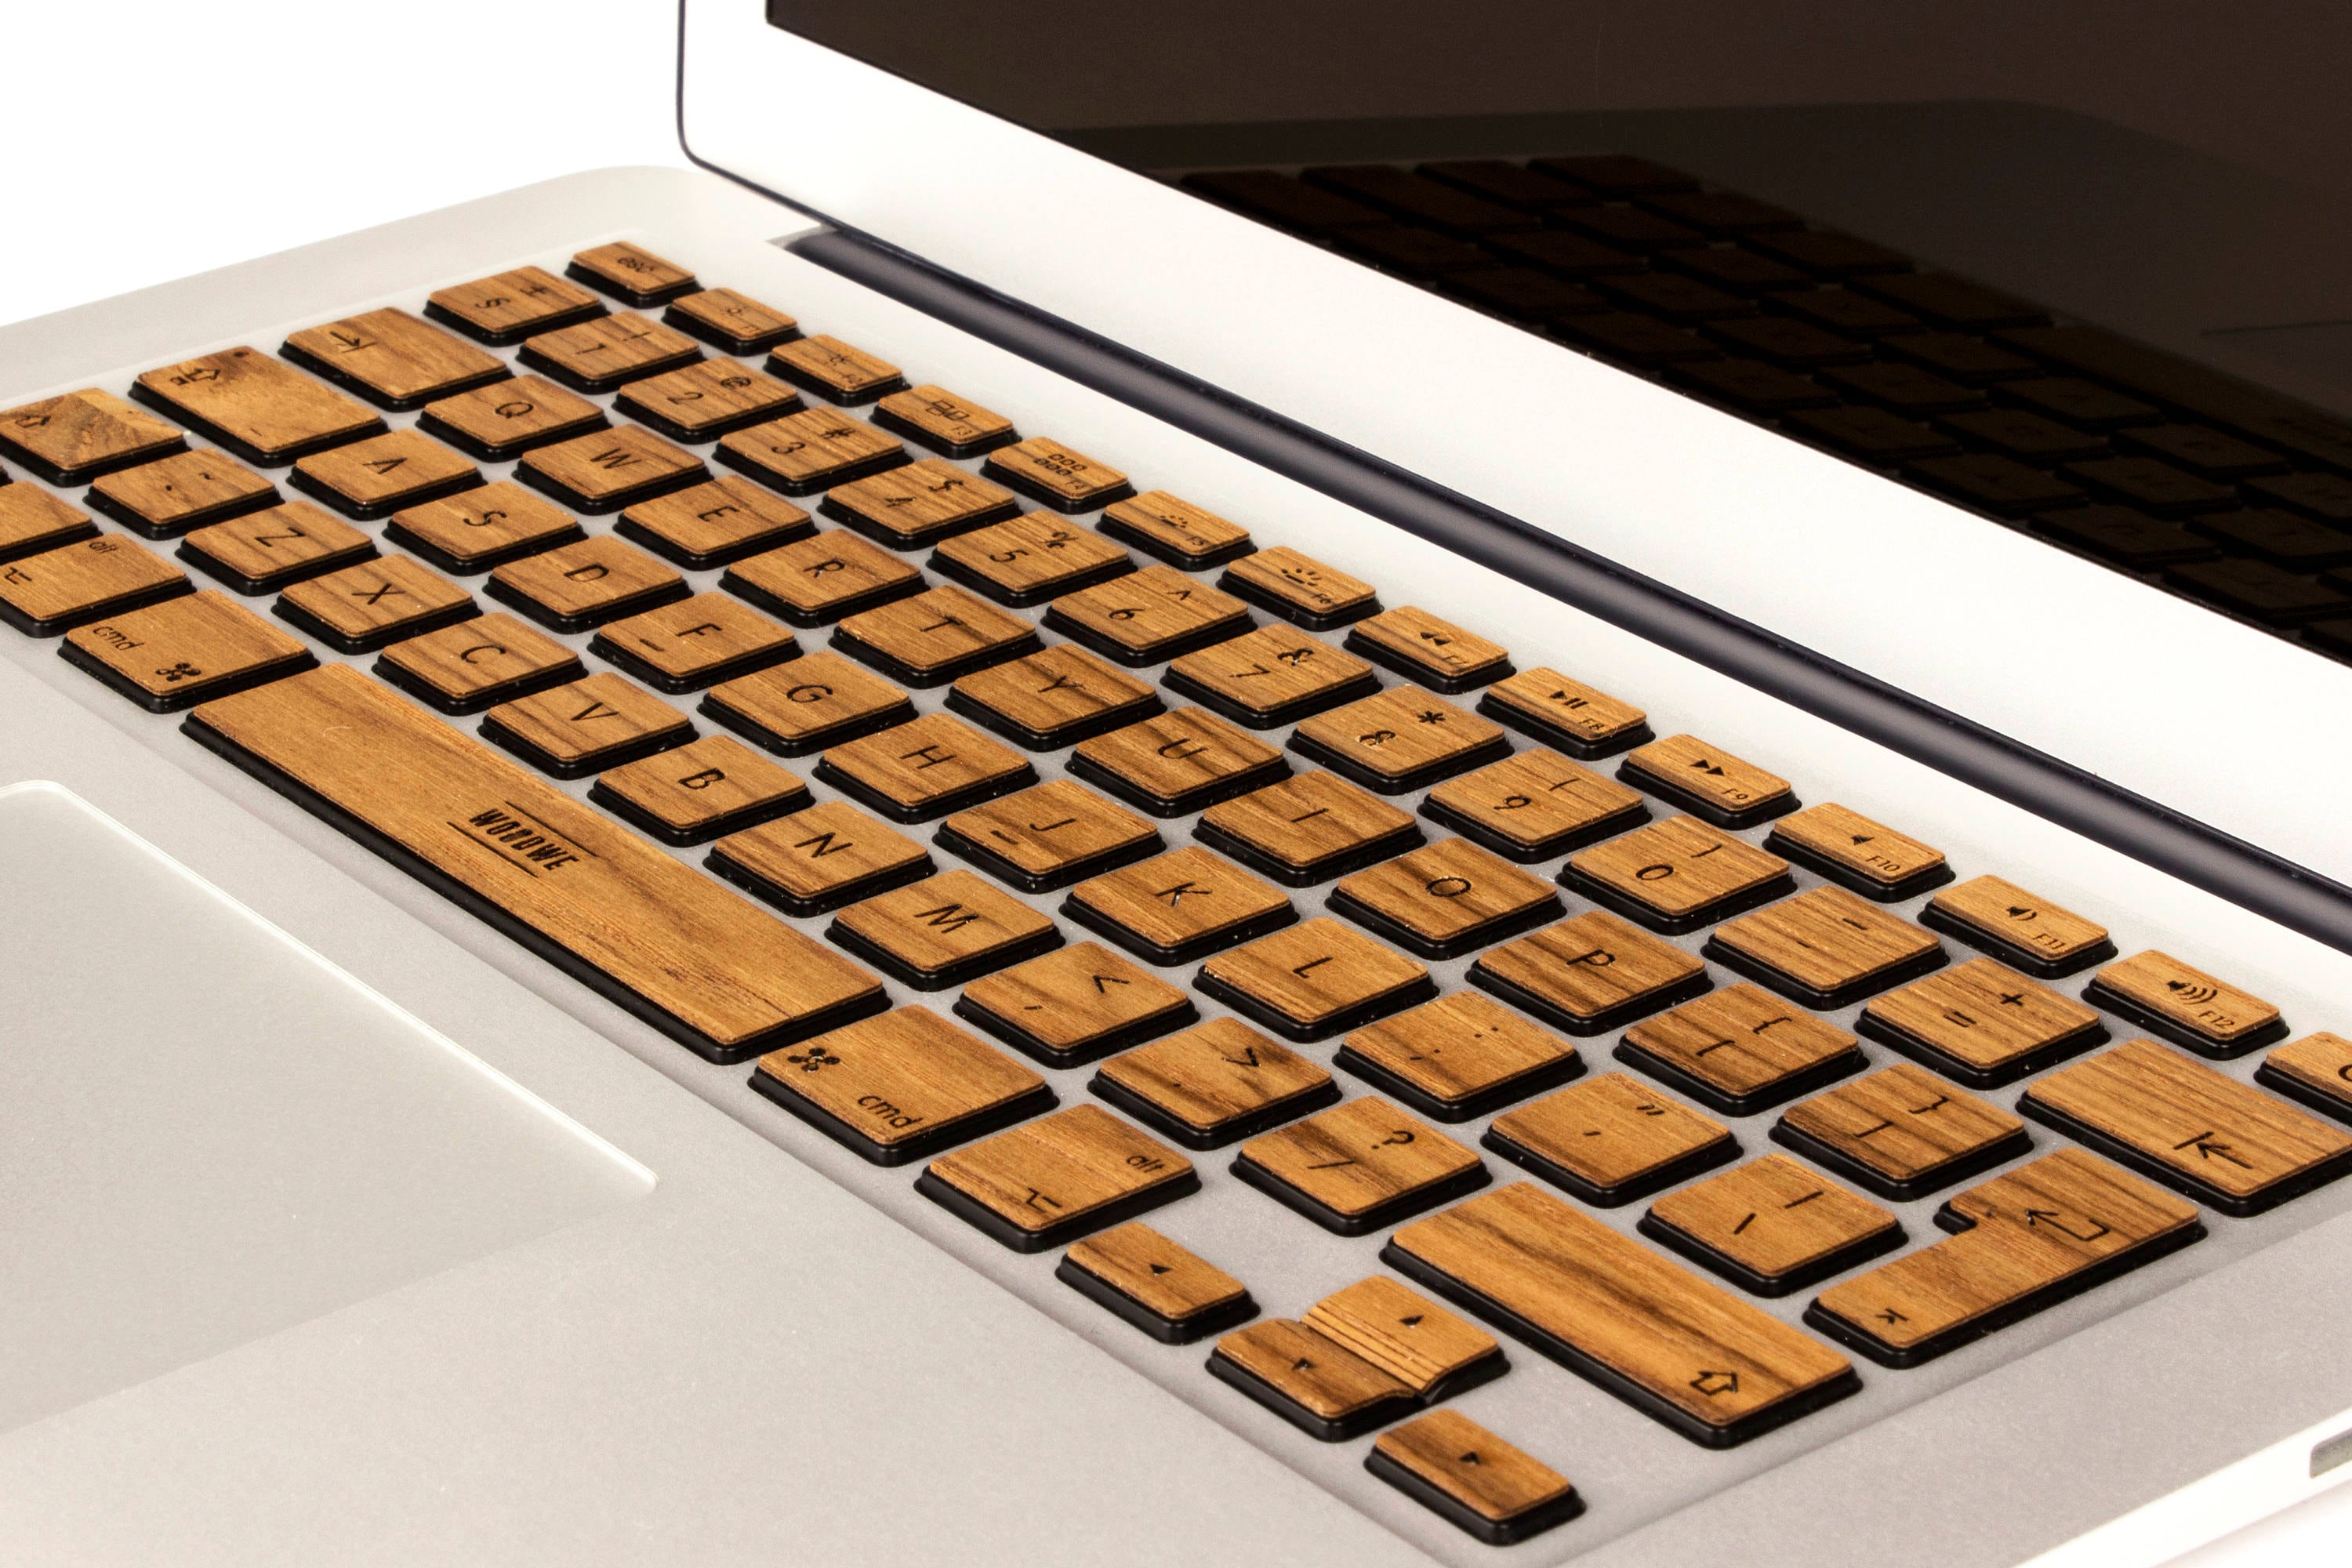 MacBook pro keyboard sticker -  France